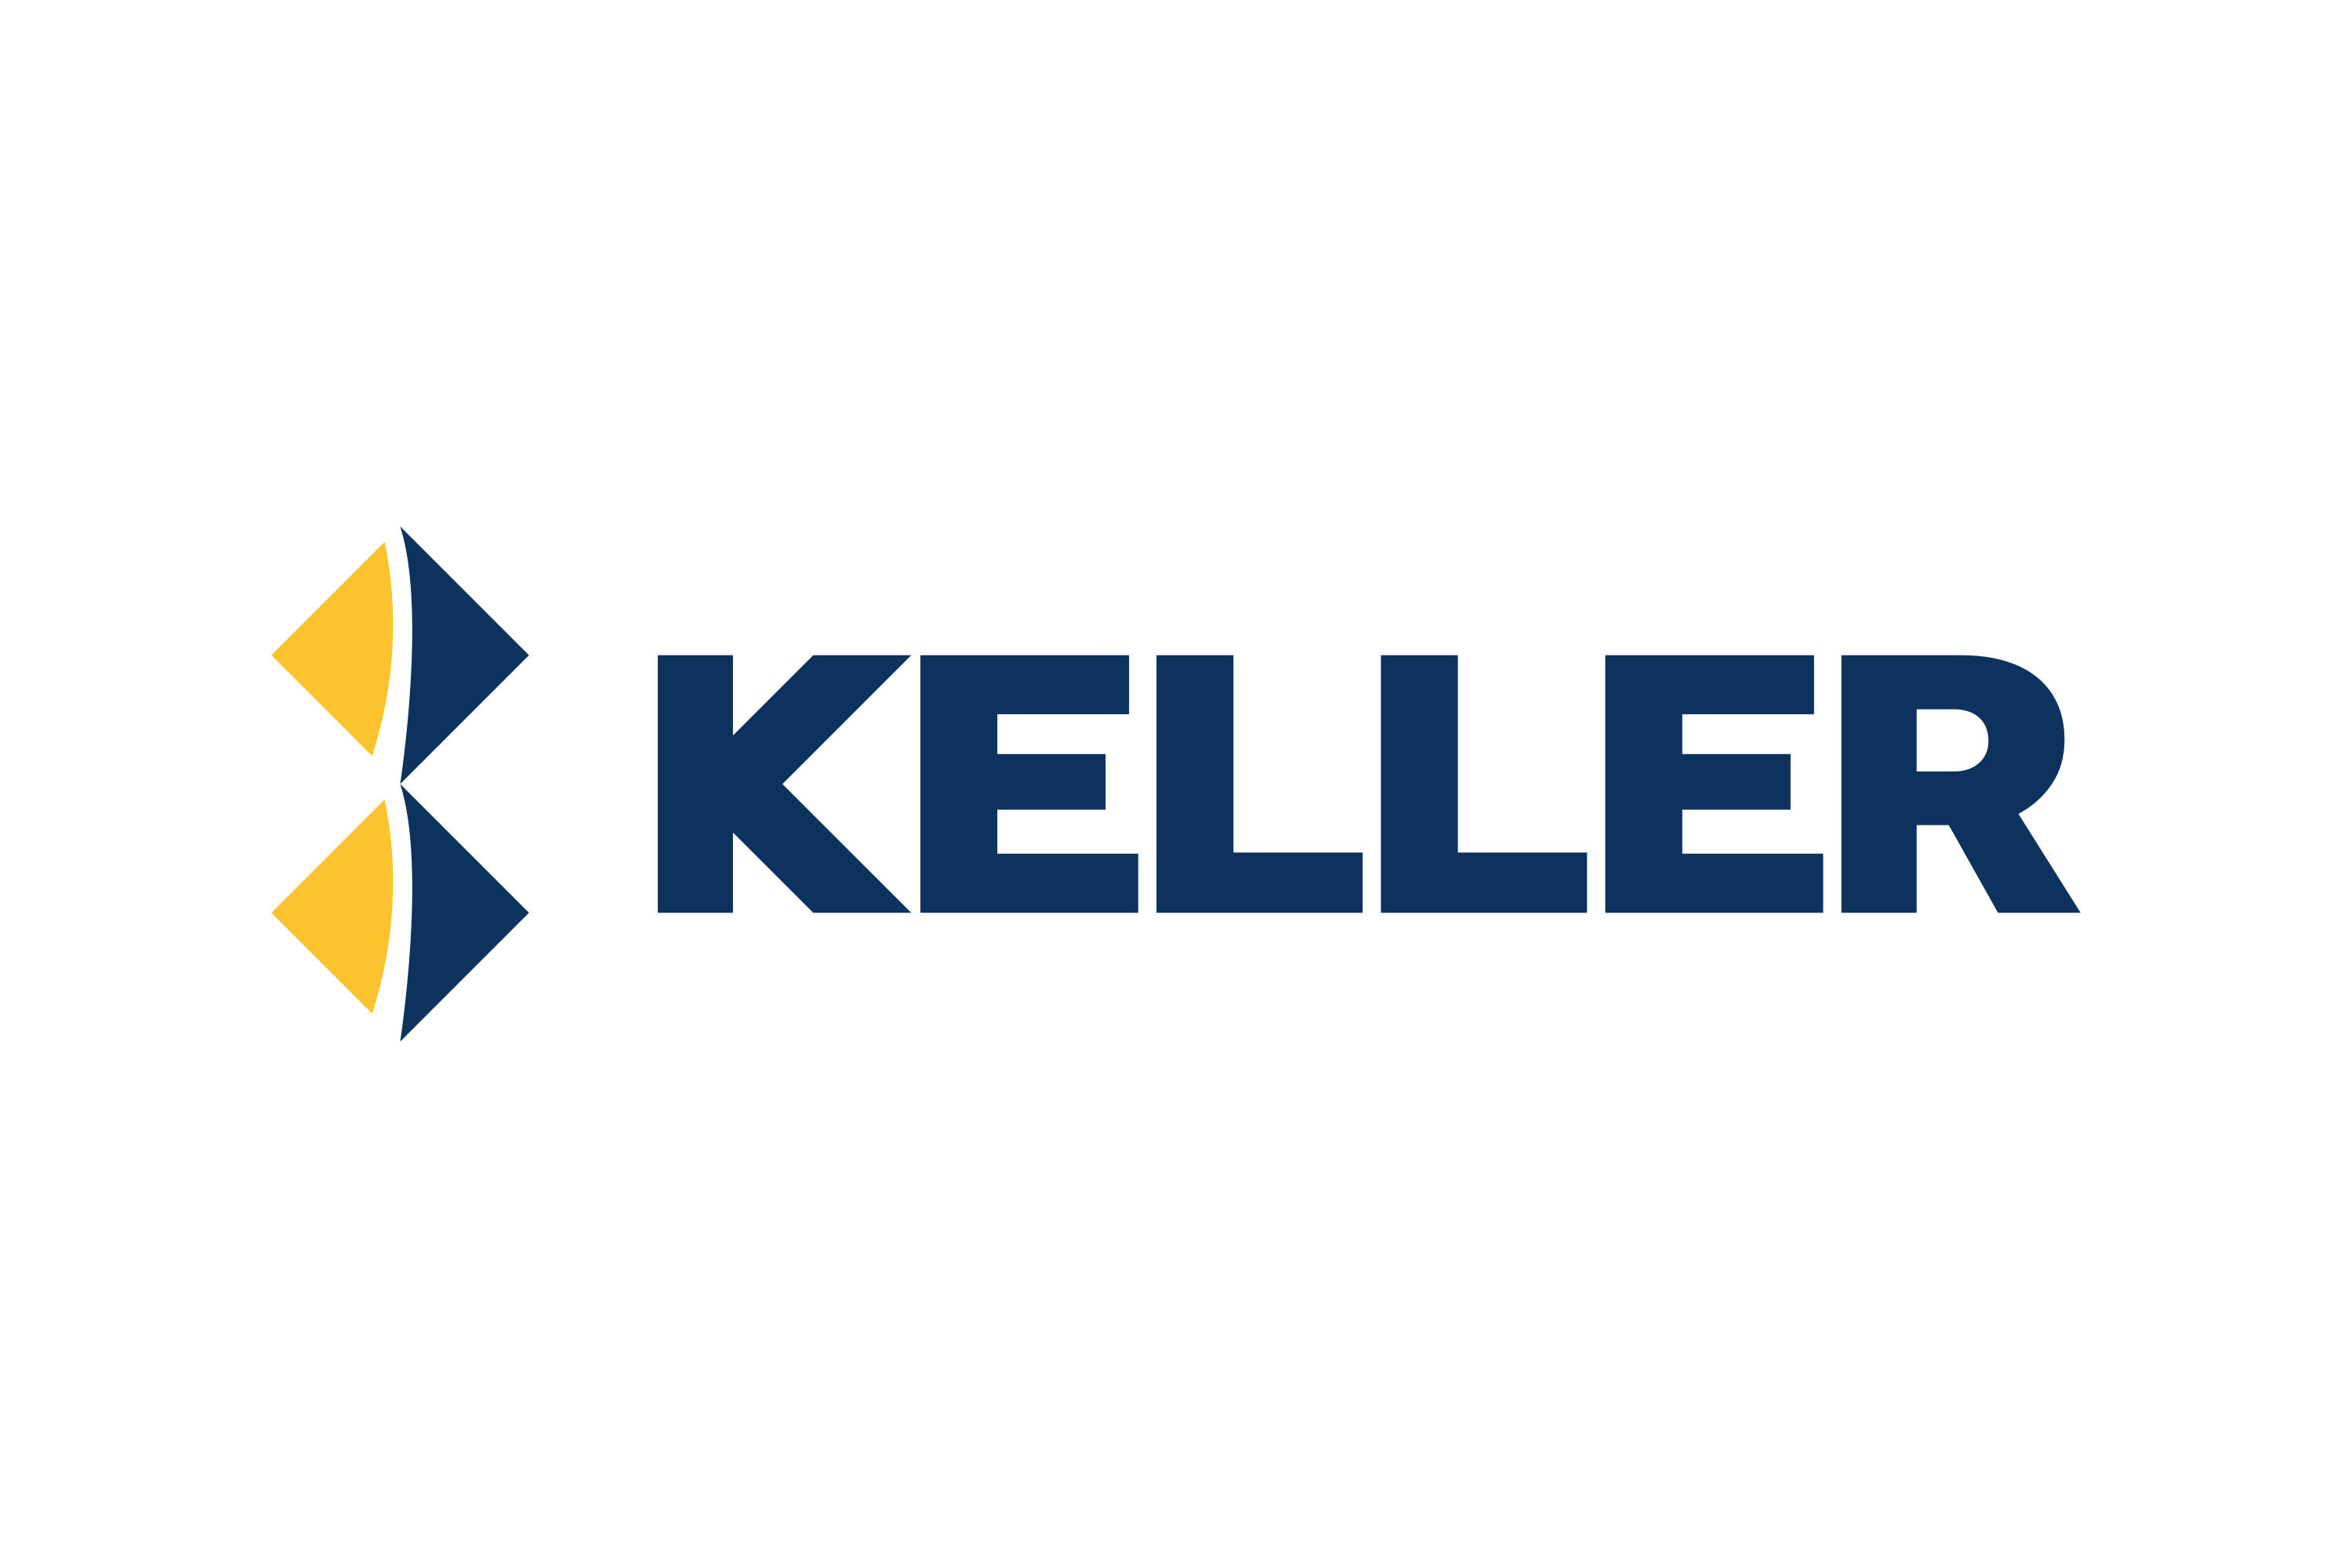 Download Keller Group Logo in SVG Vector or PNG File Format - Logo.wine